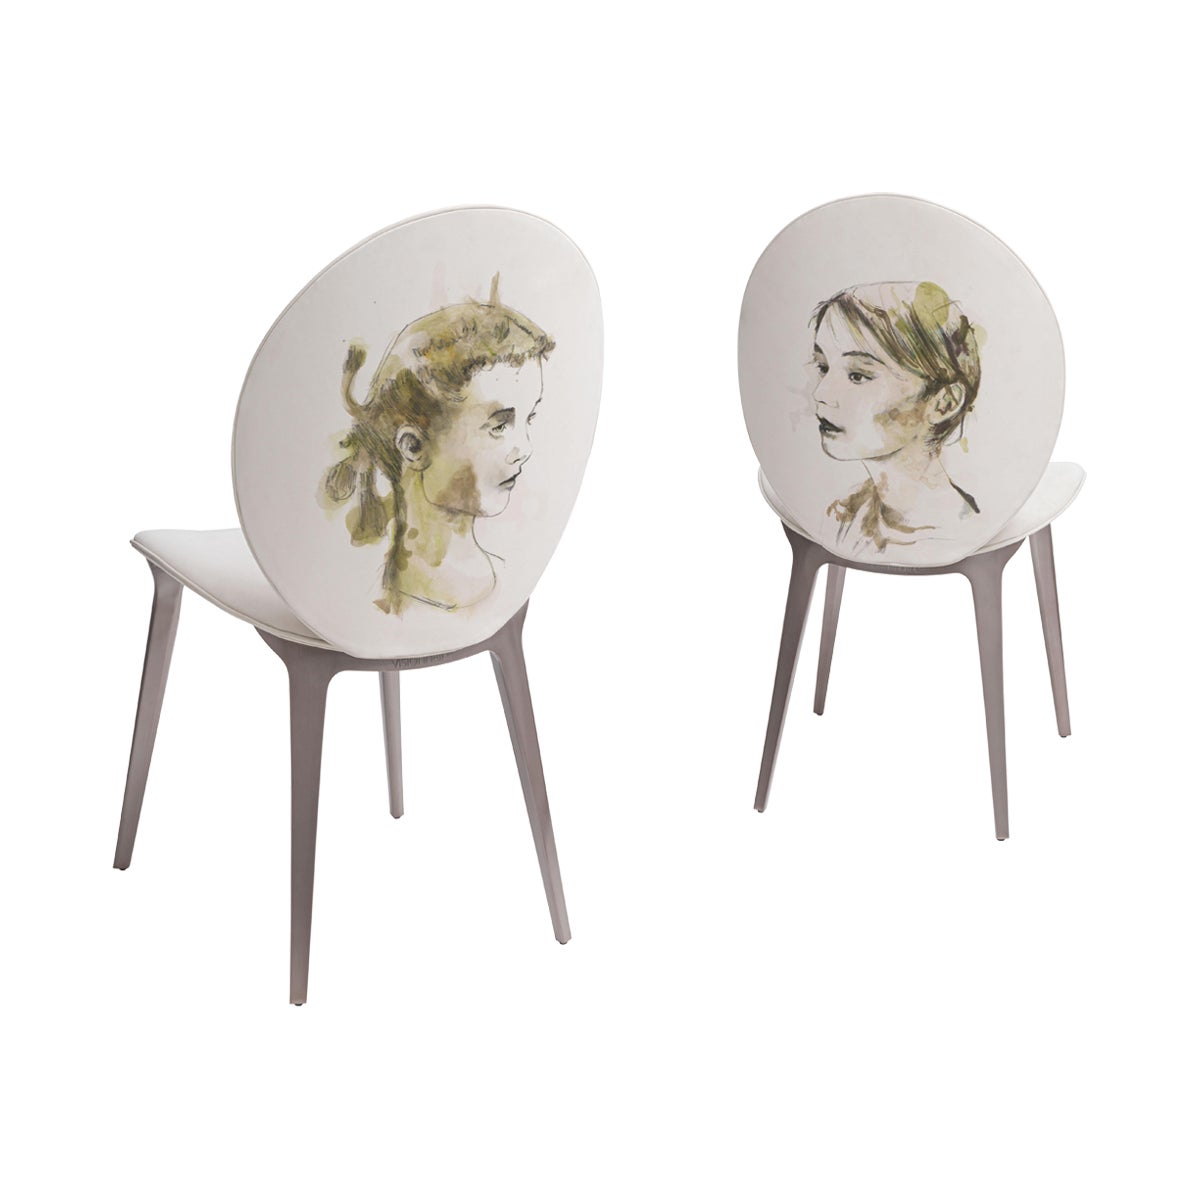 Der gepolsterte Stuhl Astrid mit Domenico Grenci-Gemälde